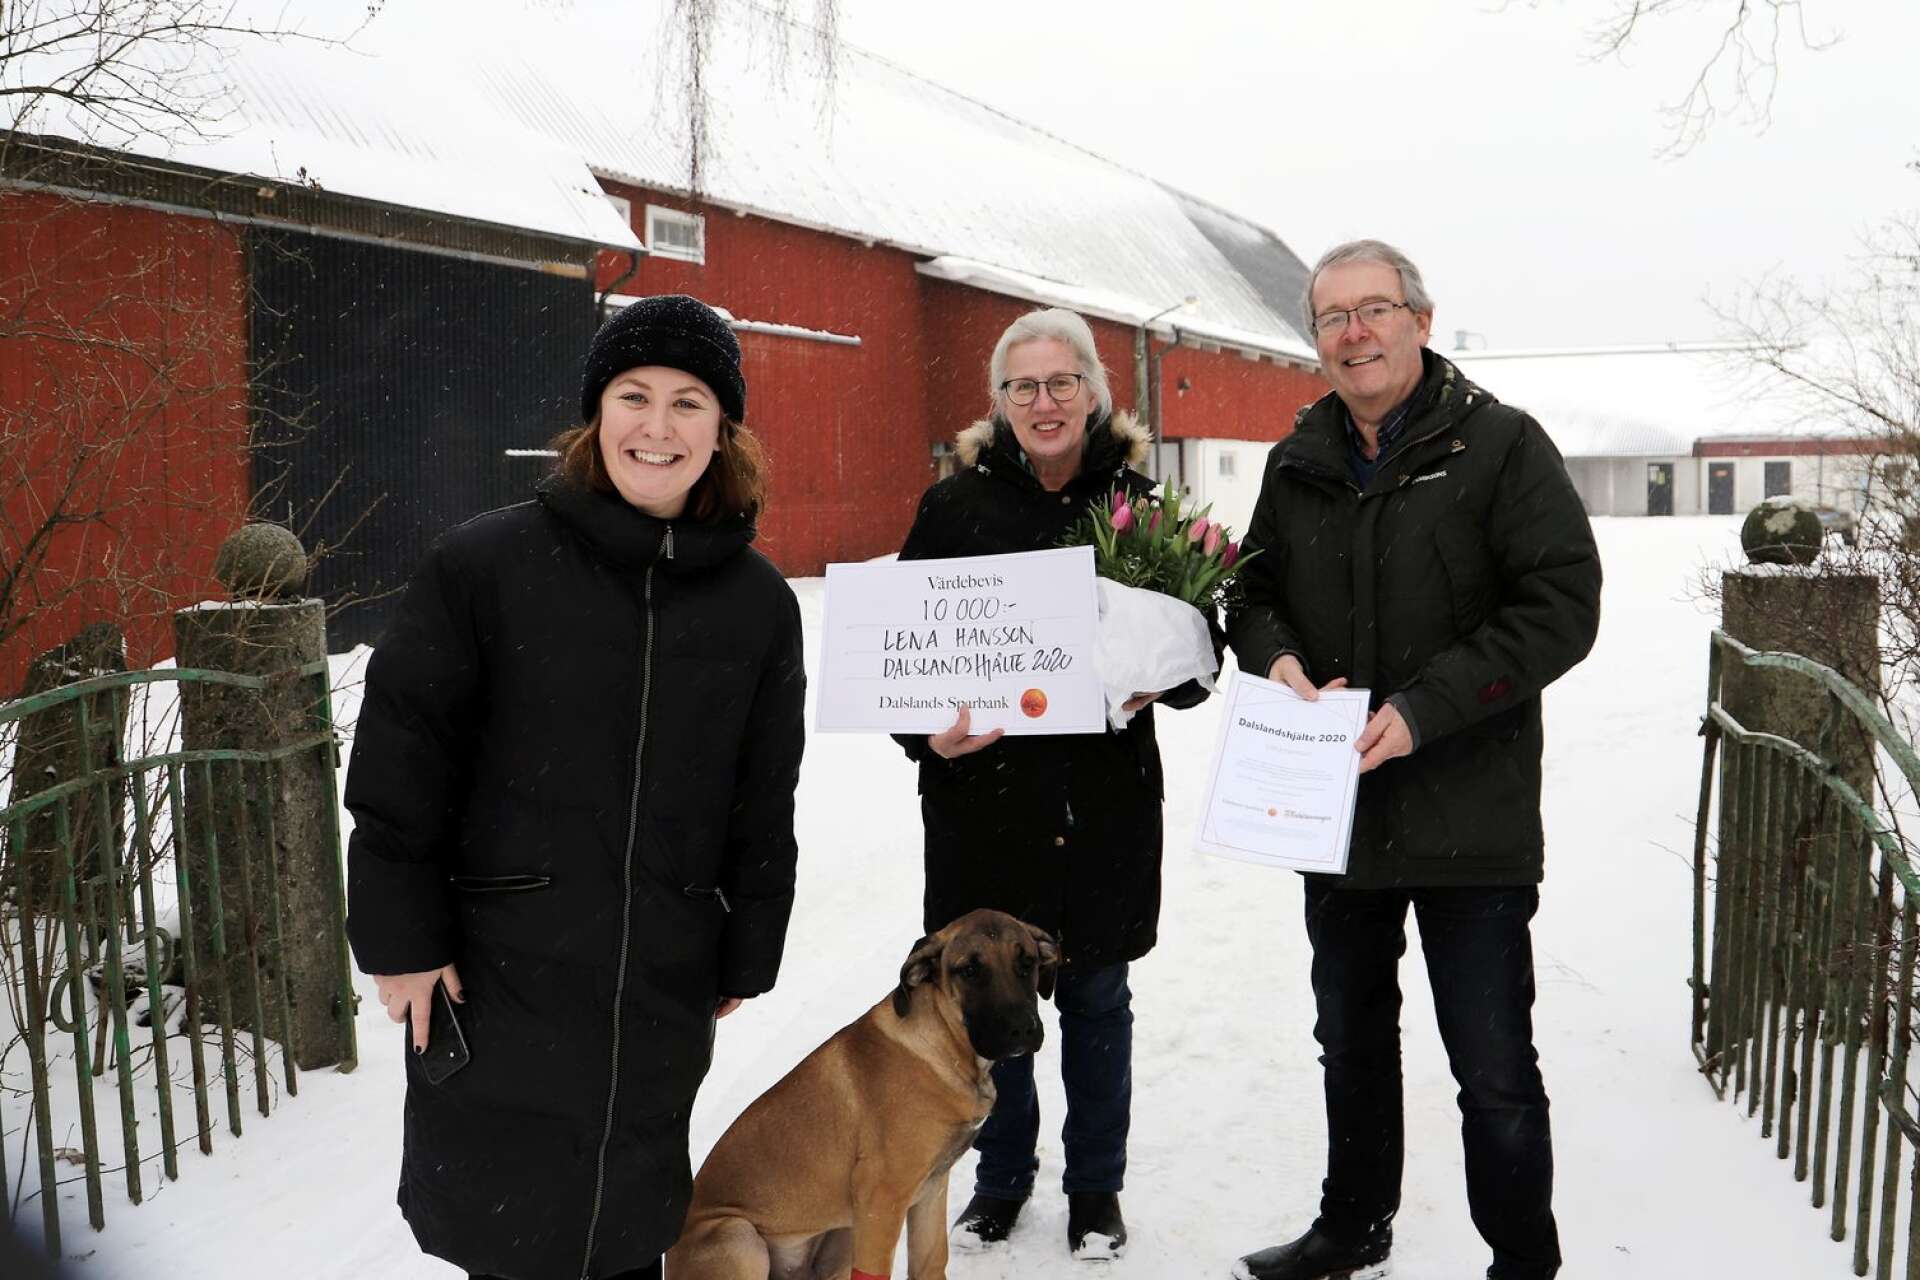 Lena Hansson fick många nominerar till utmärkelsen Dalslandshjälte 2020. I onsdags uppvaktades hon av Sofia Falkman, Dalslands Sparbank, och Thomas Wallin, Dalslänningen.